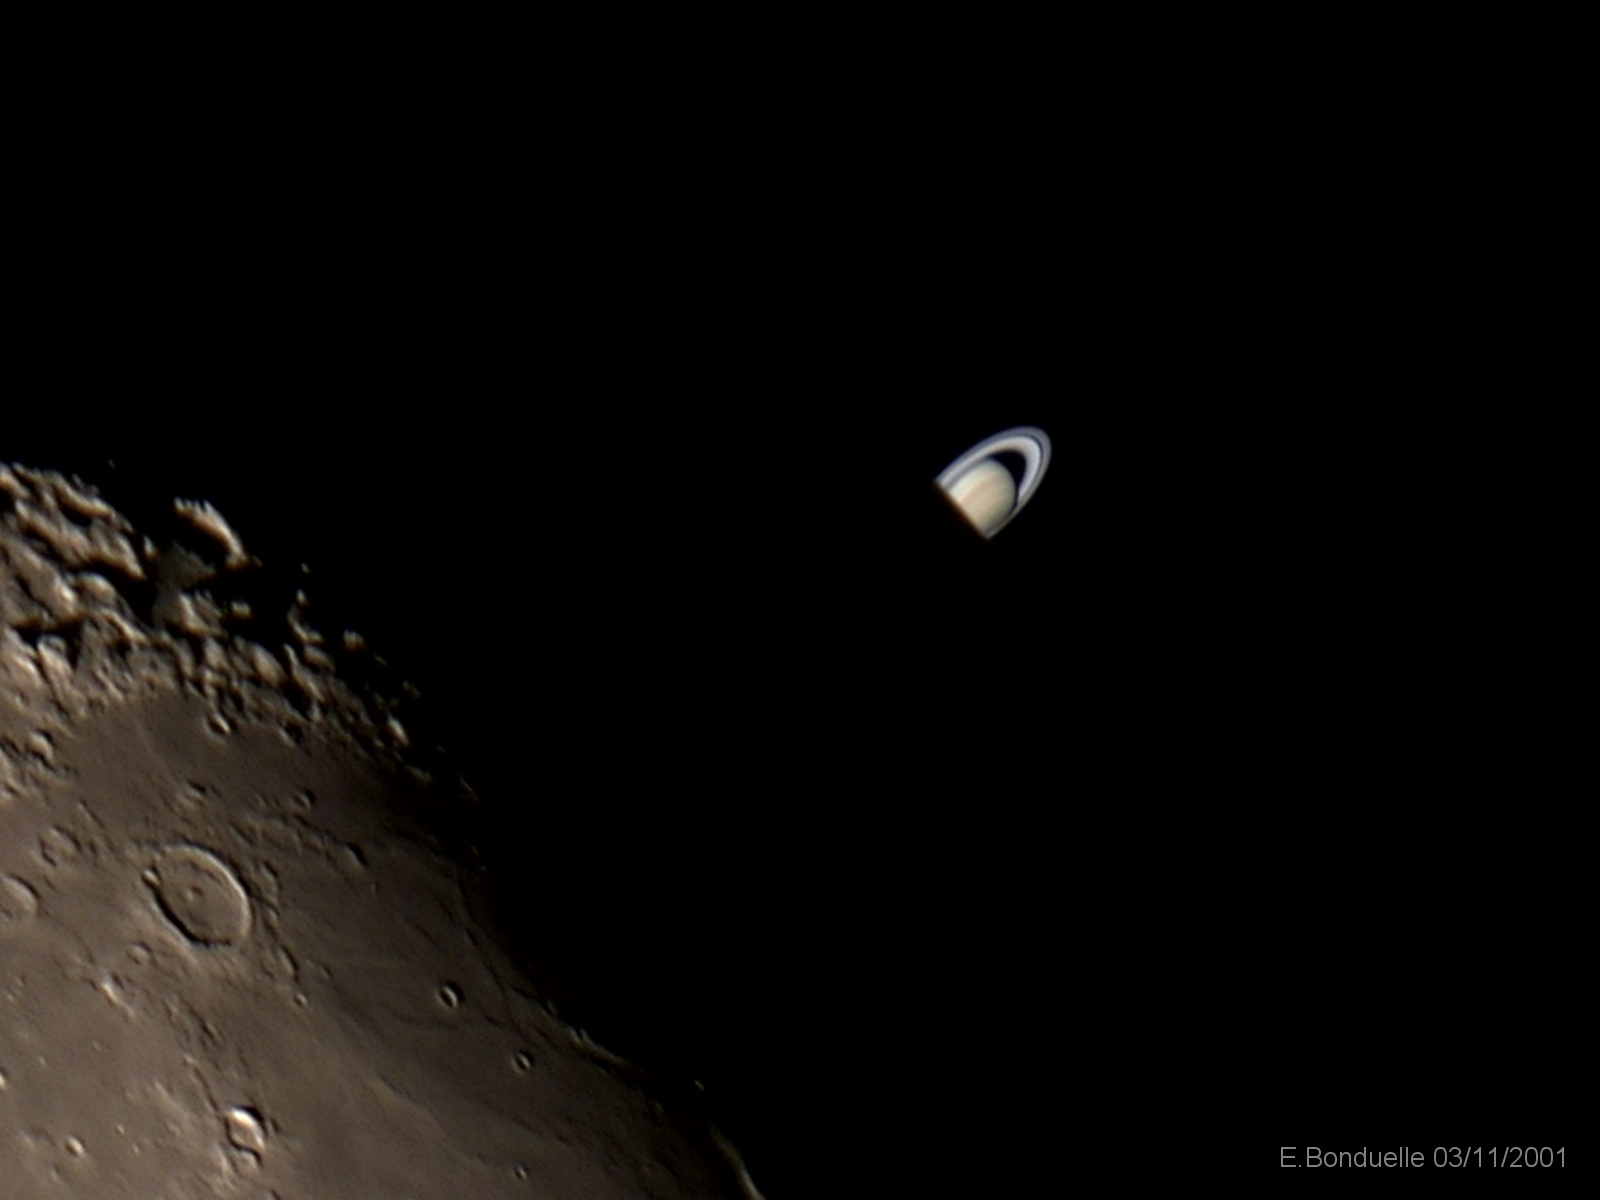 Сатурн в телескоп 400 мм